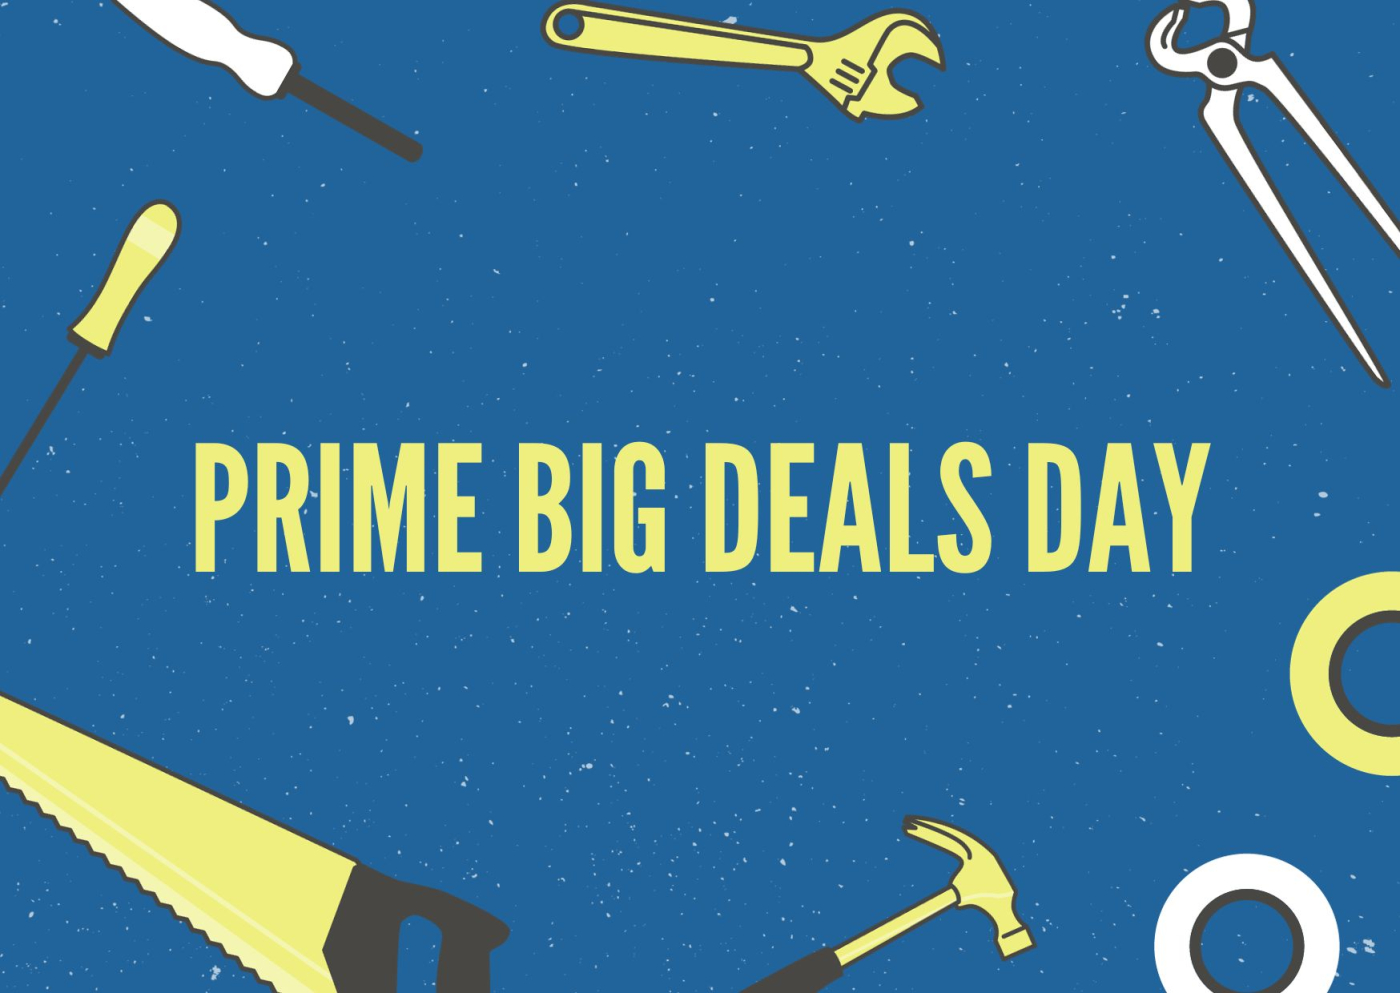 Prime Big Deals Day Woodworking Tools Deals